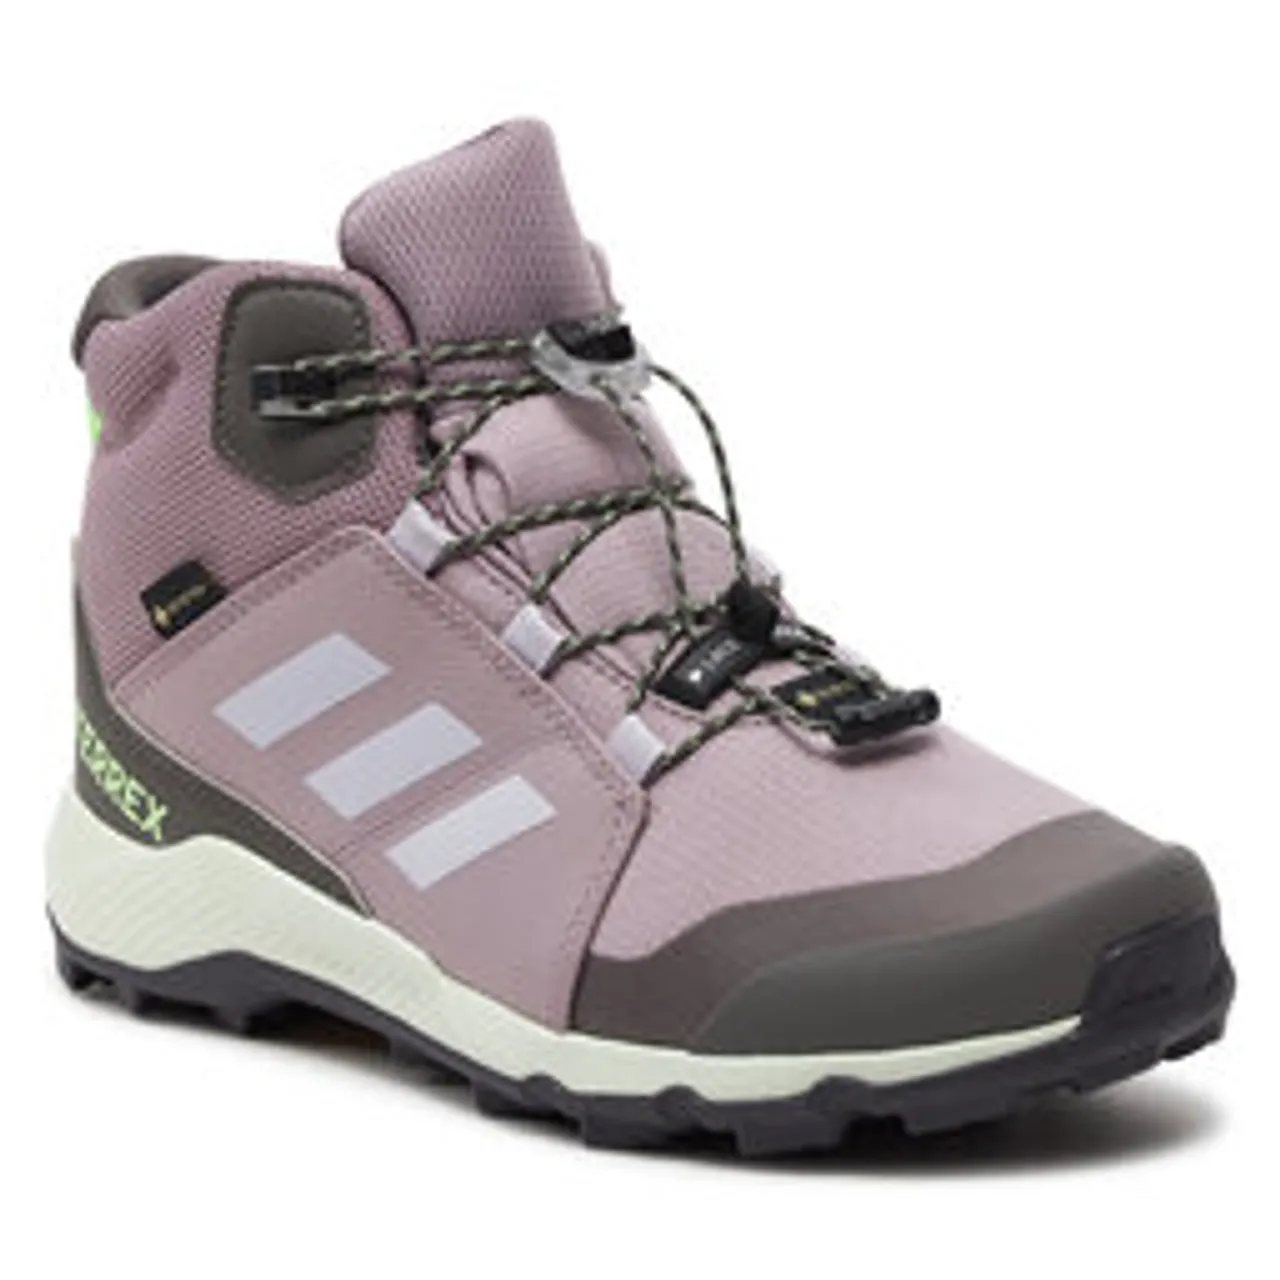 Trekkingschuhe adidas Terrex Mid GORE-TEX Hiking ID3328 Violett